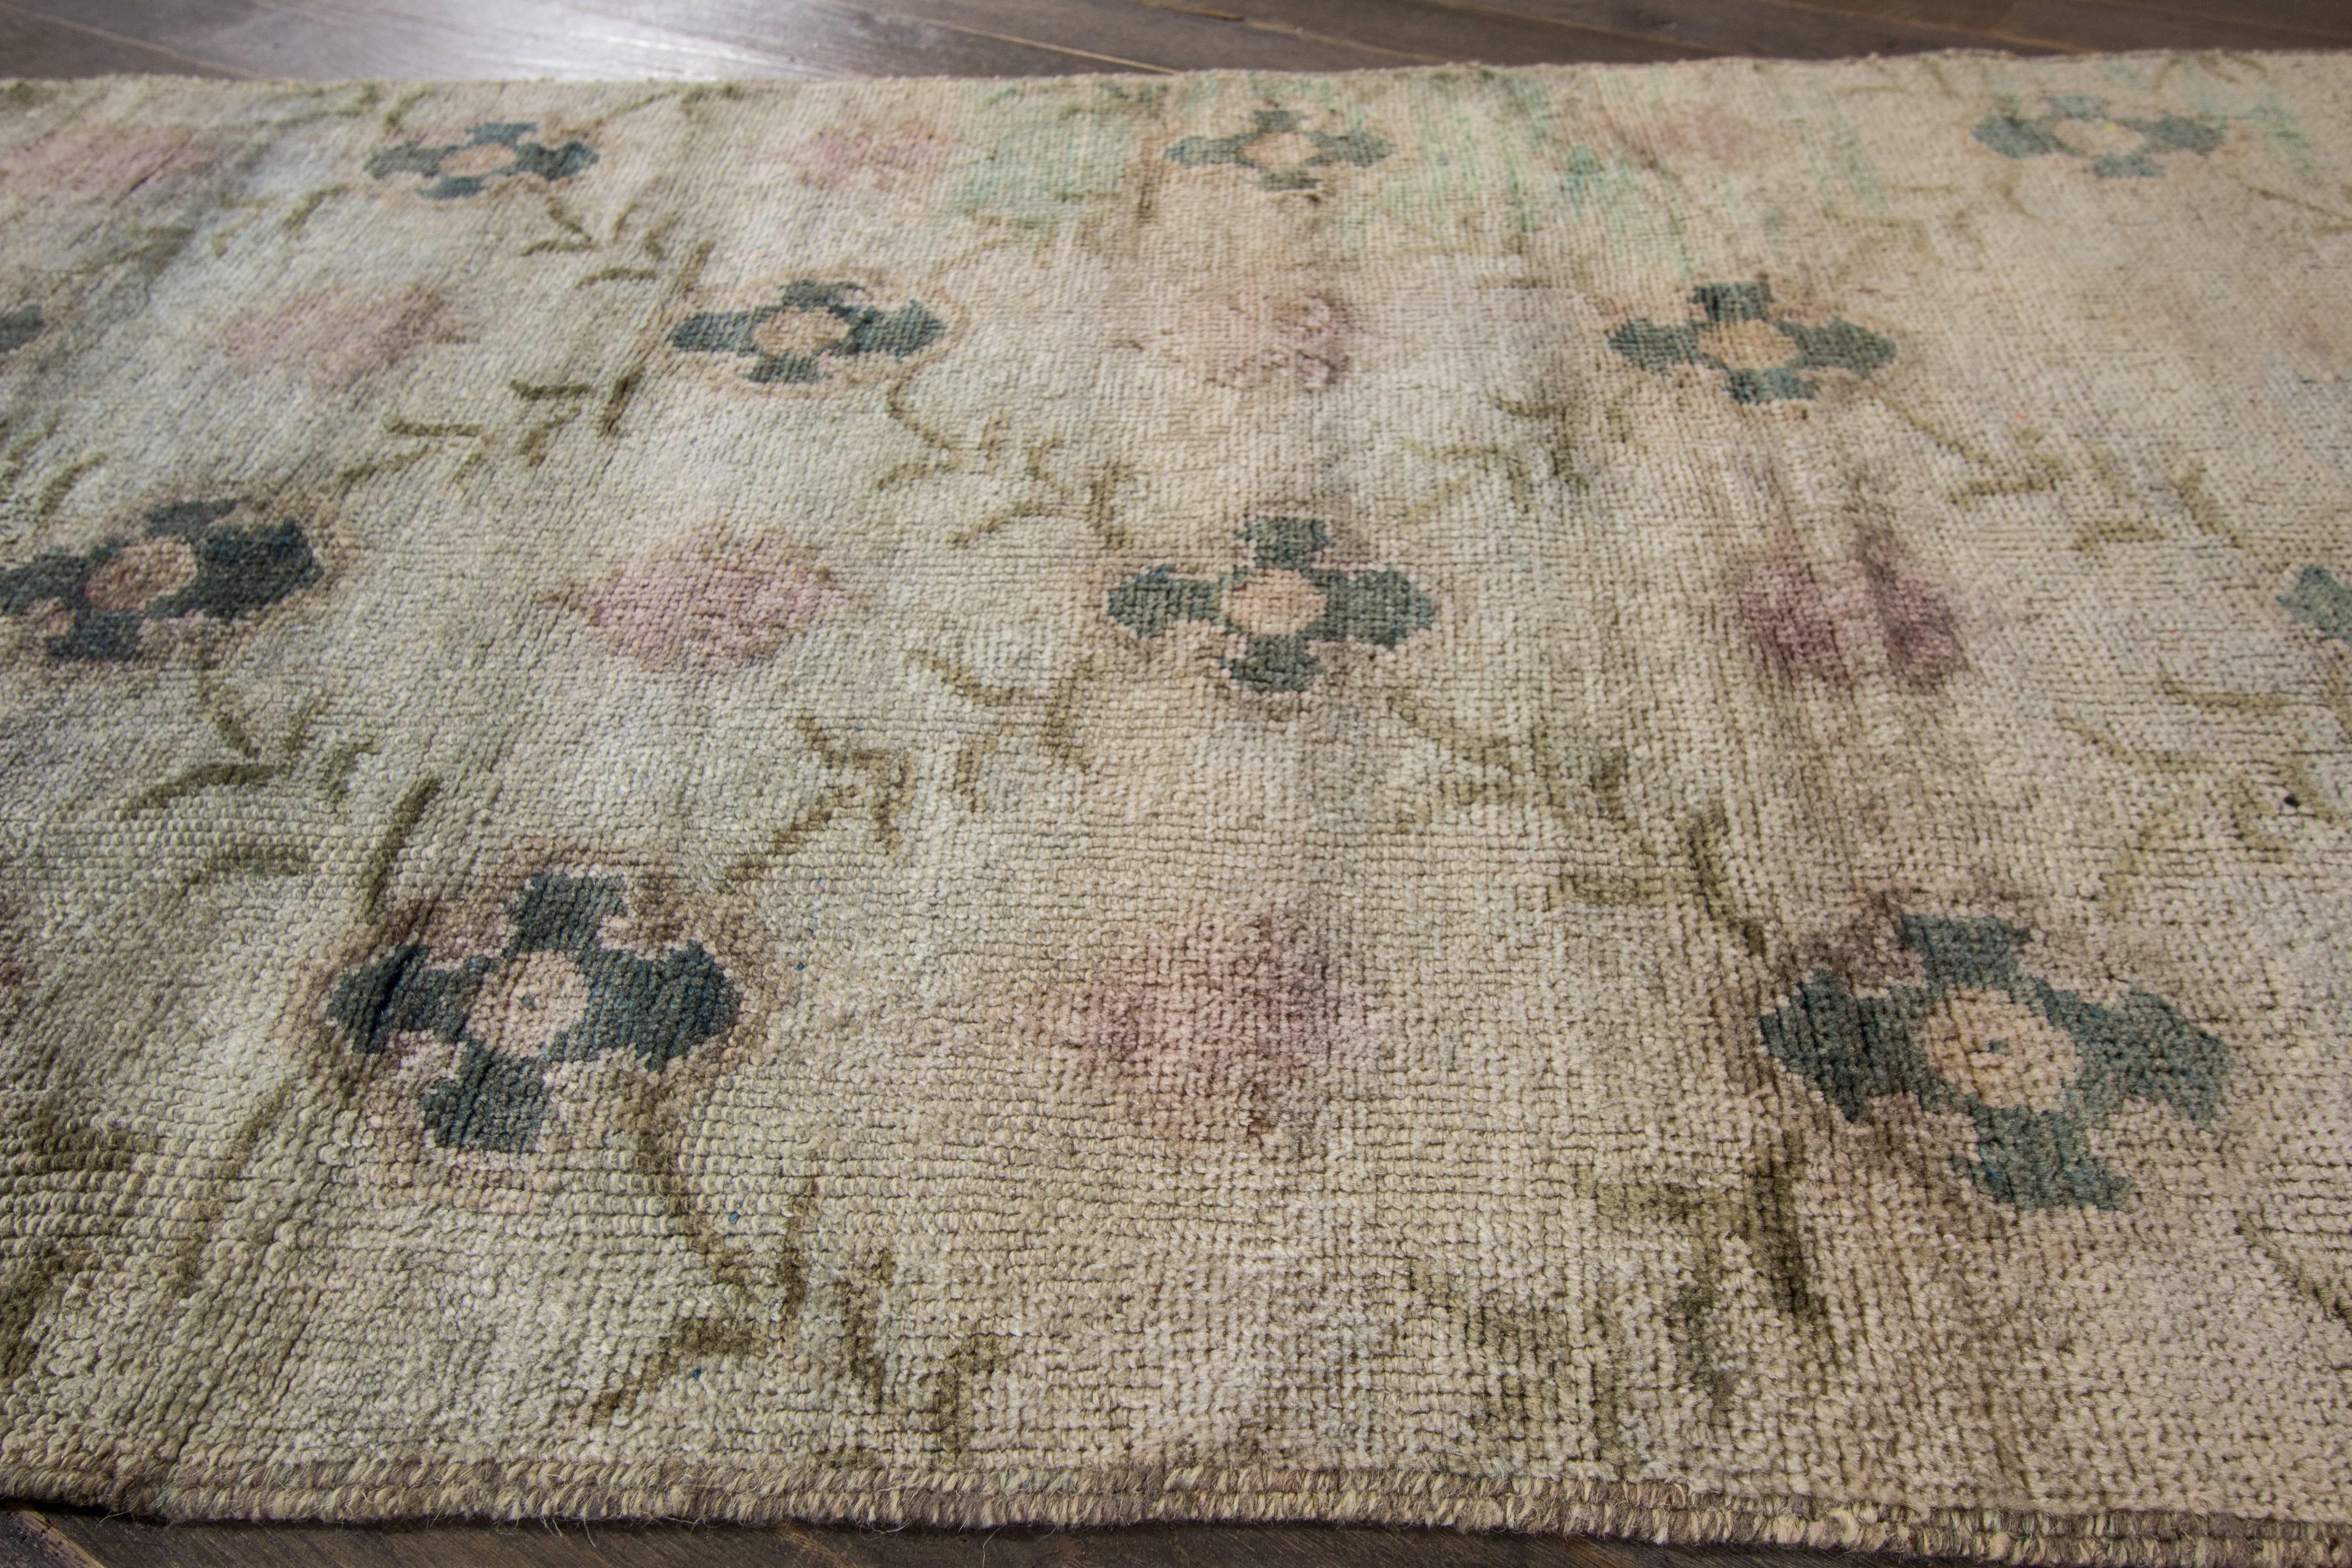 Magnifique tapis de course turc antique avec un motif floral sur toute la surface, avec des accents rose clair et vert. Ce tapis mesure 2' 8